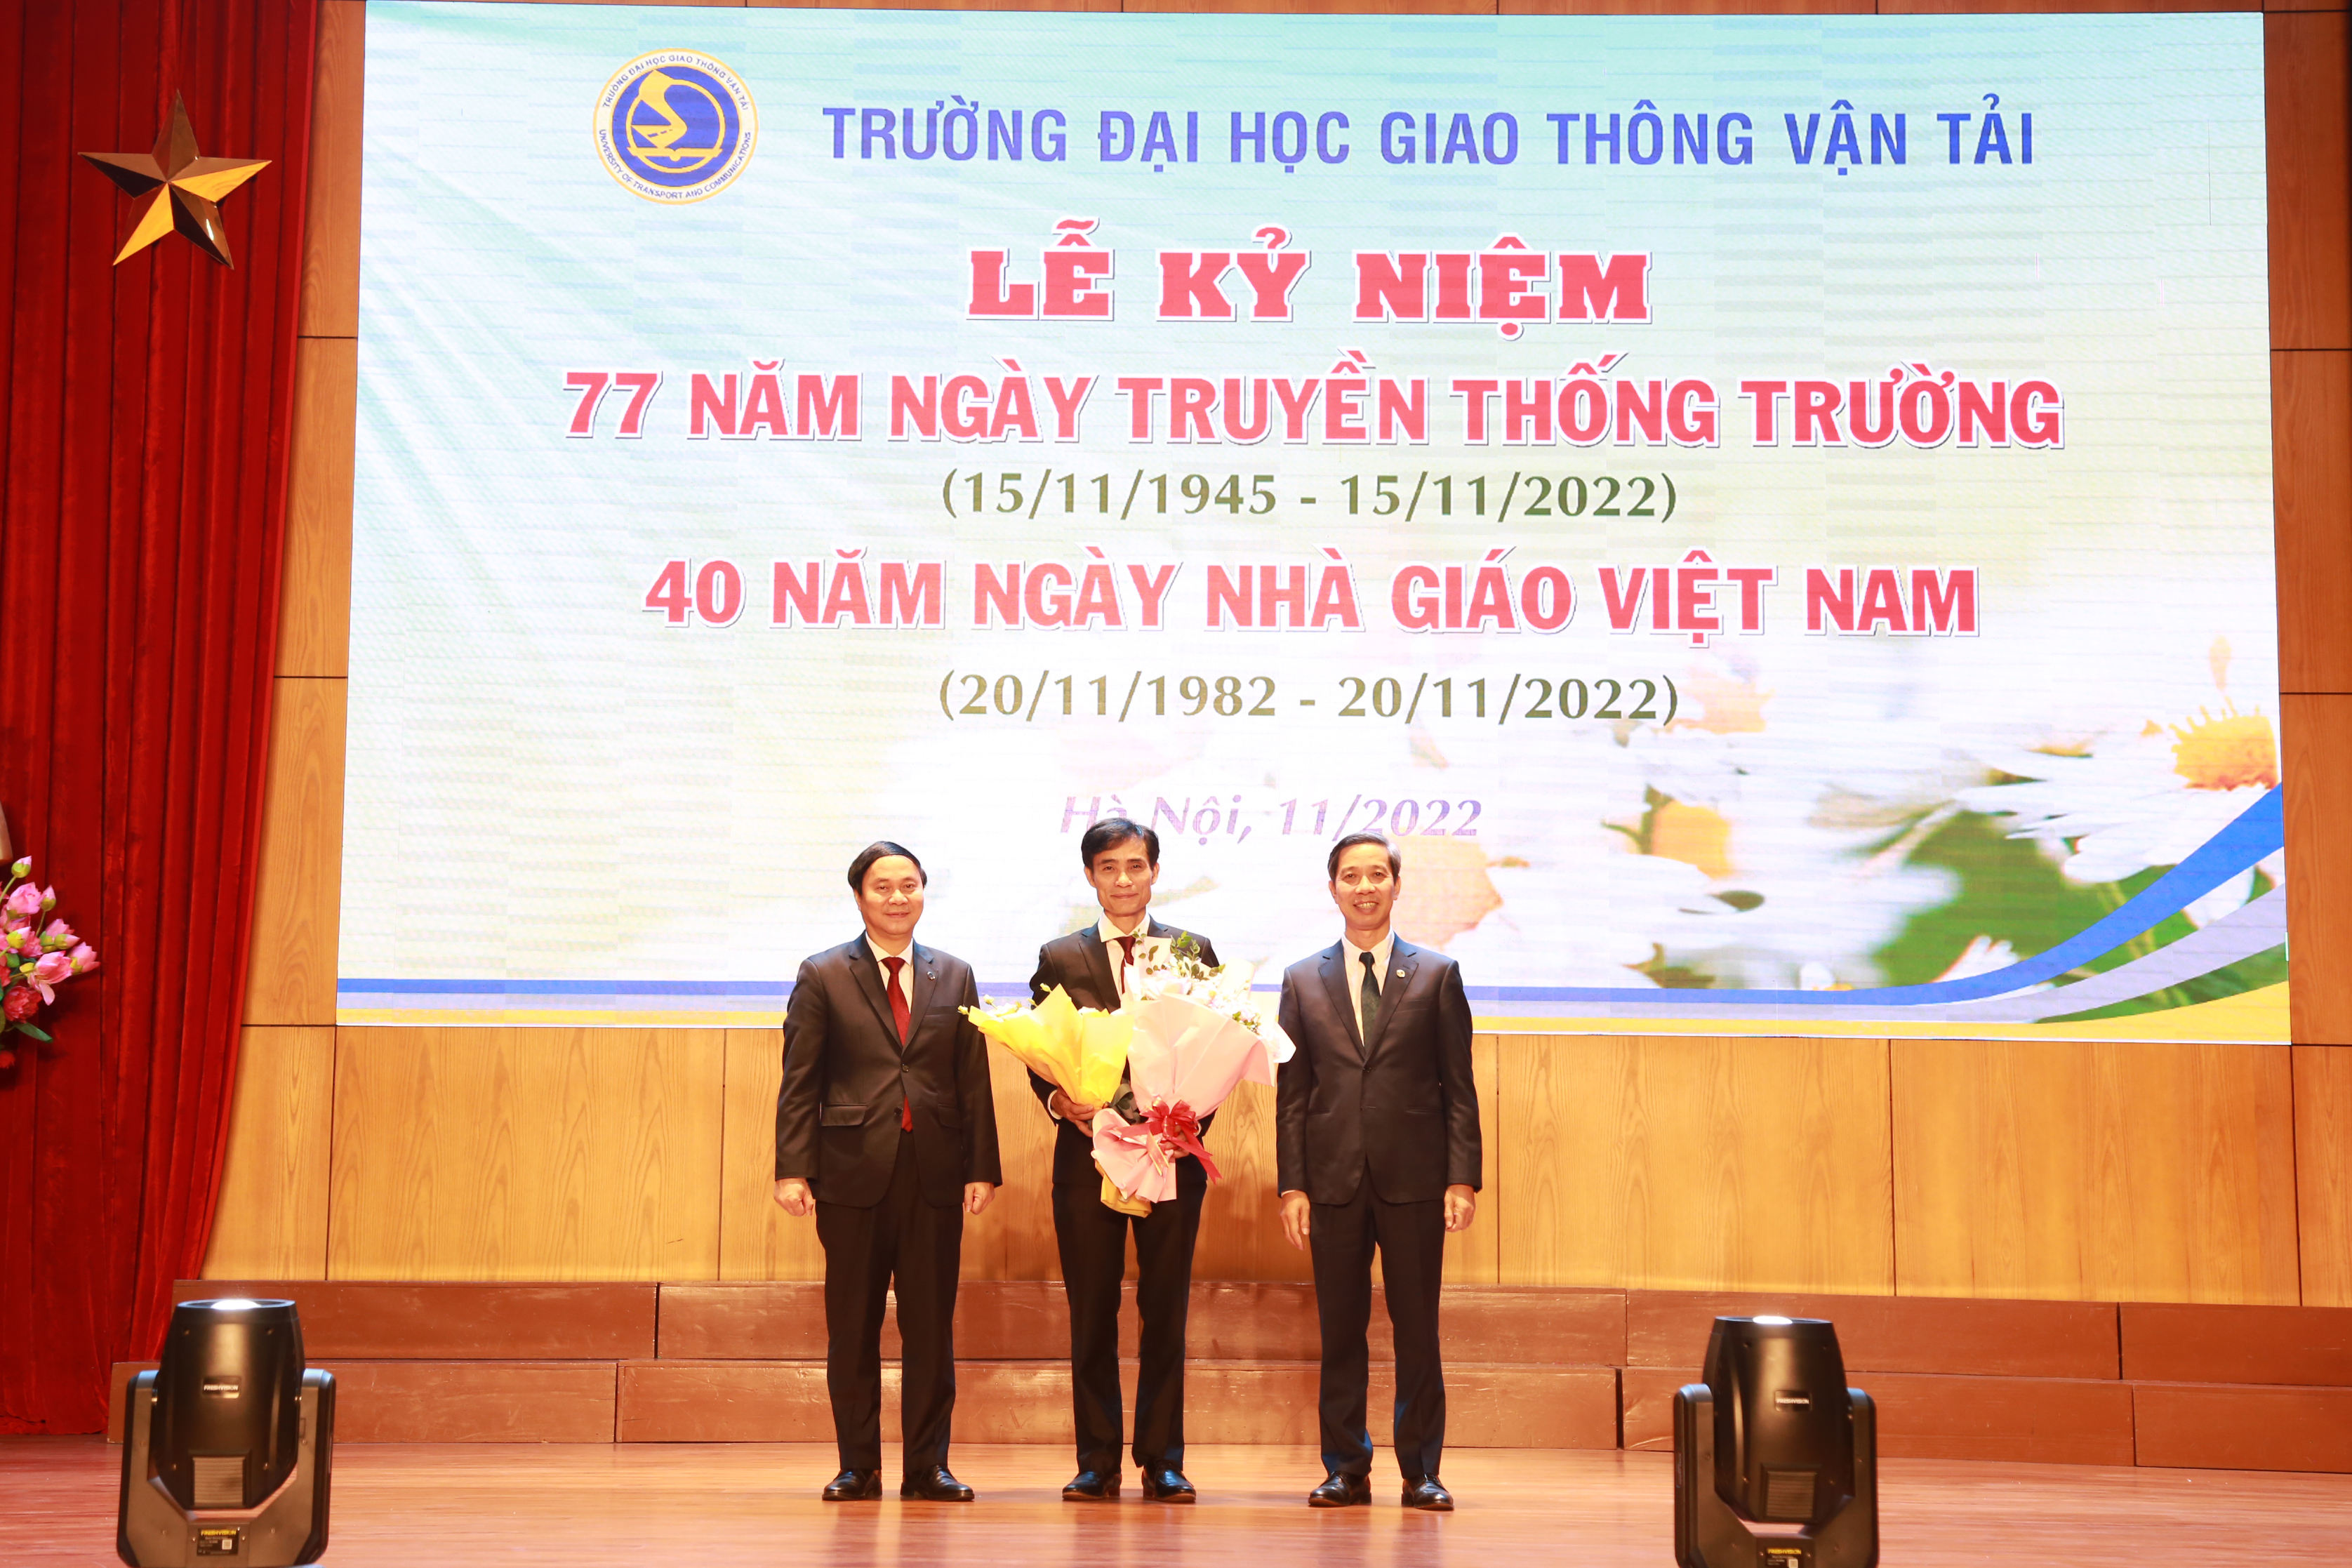 Lễ kỷ niệm 77 năm ngày truyền thống Trường ĐHGTVT và 40 năm ngày Nhà giáo Việt Nam 20/11